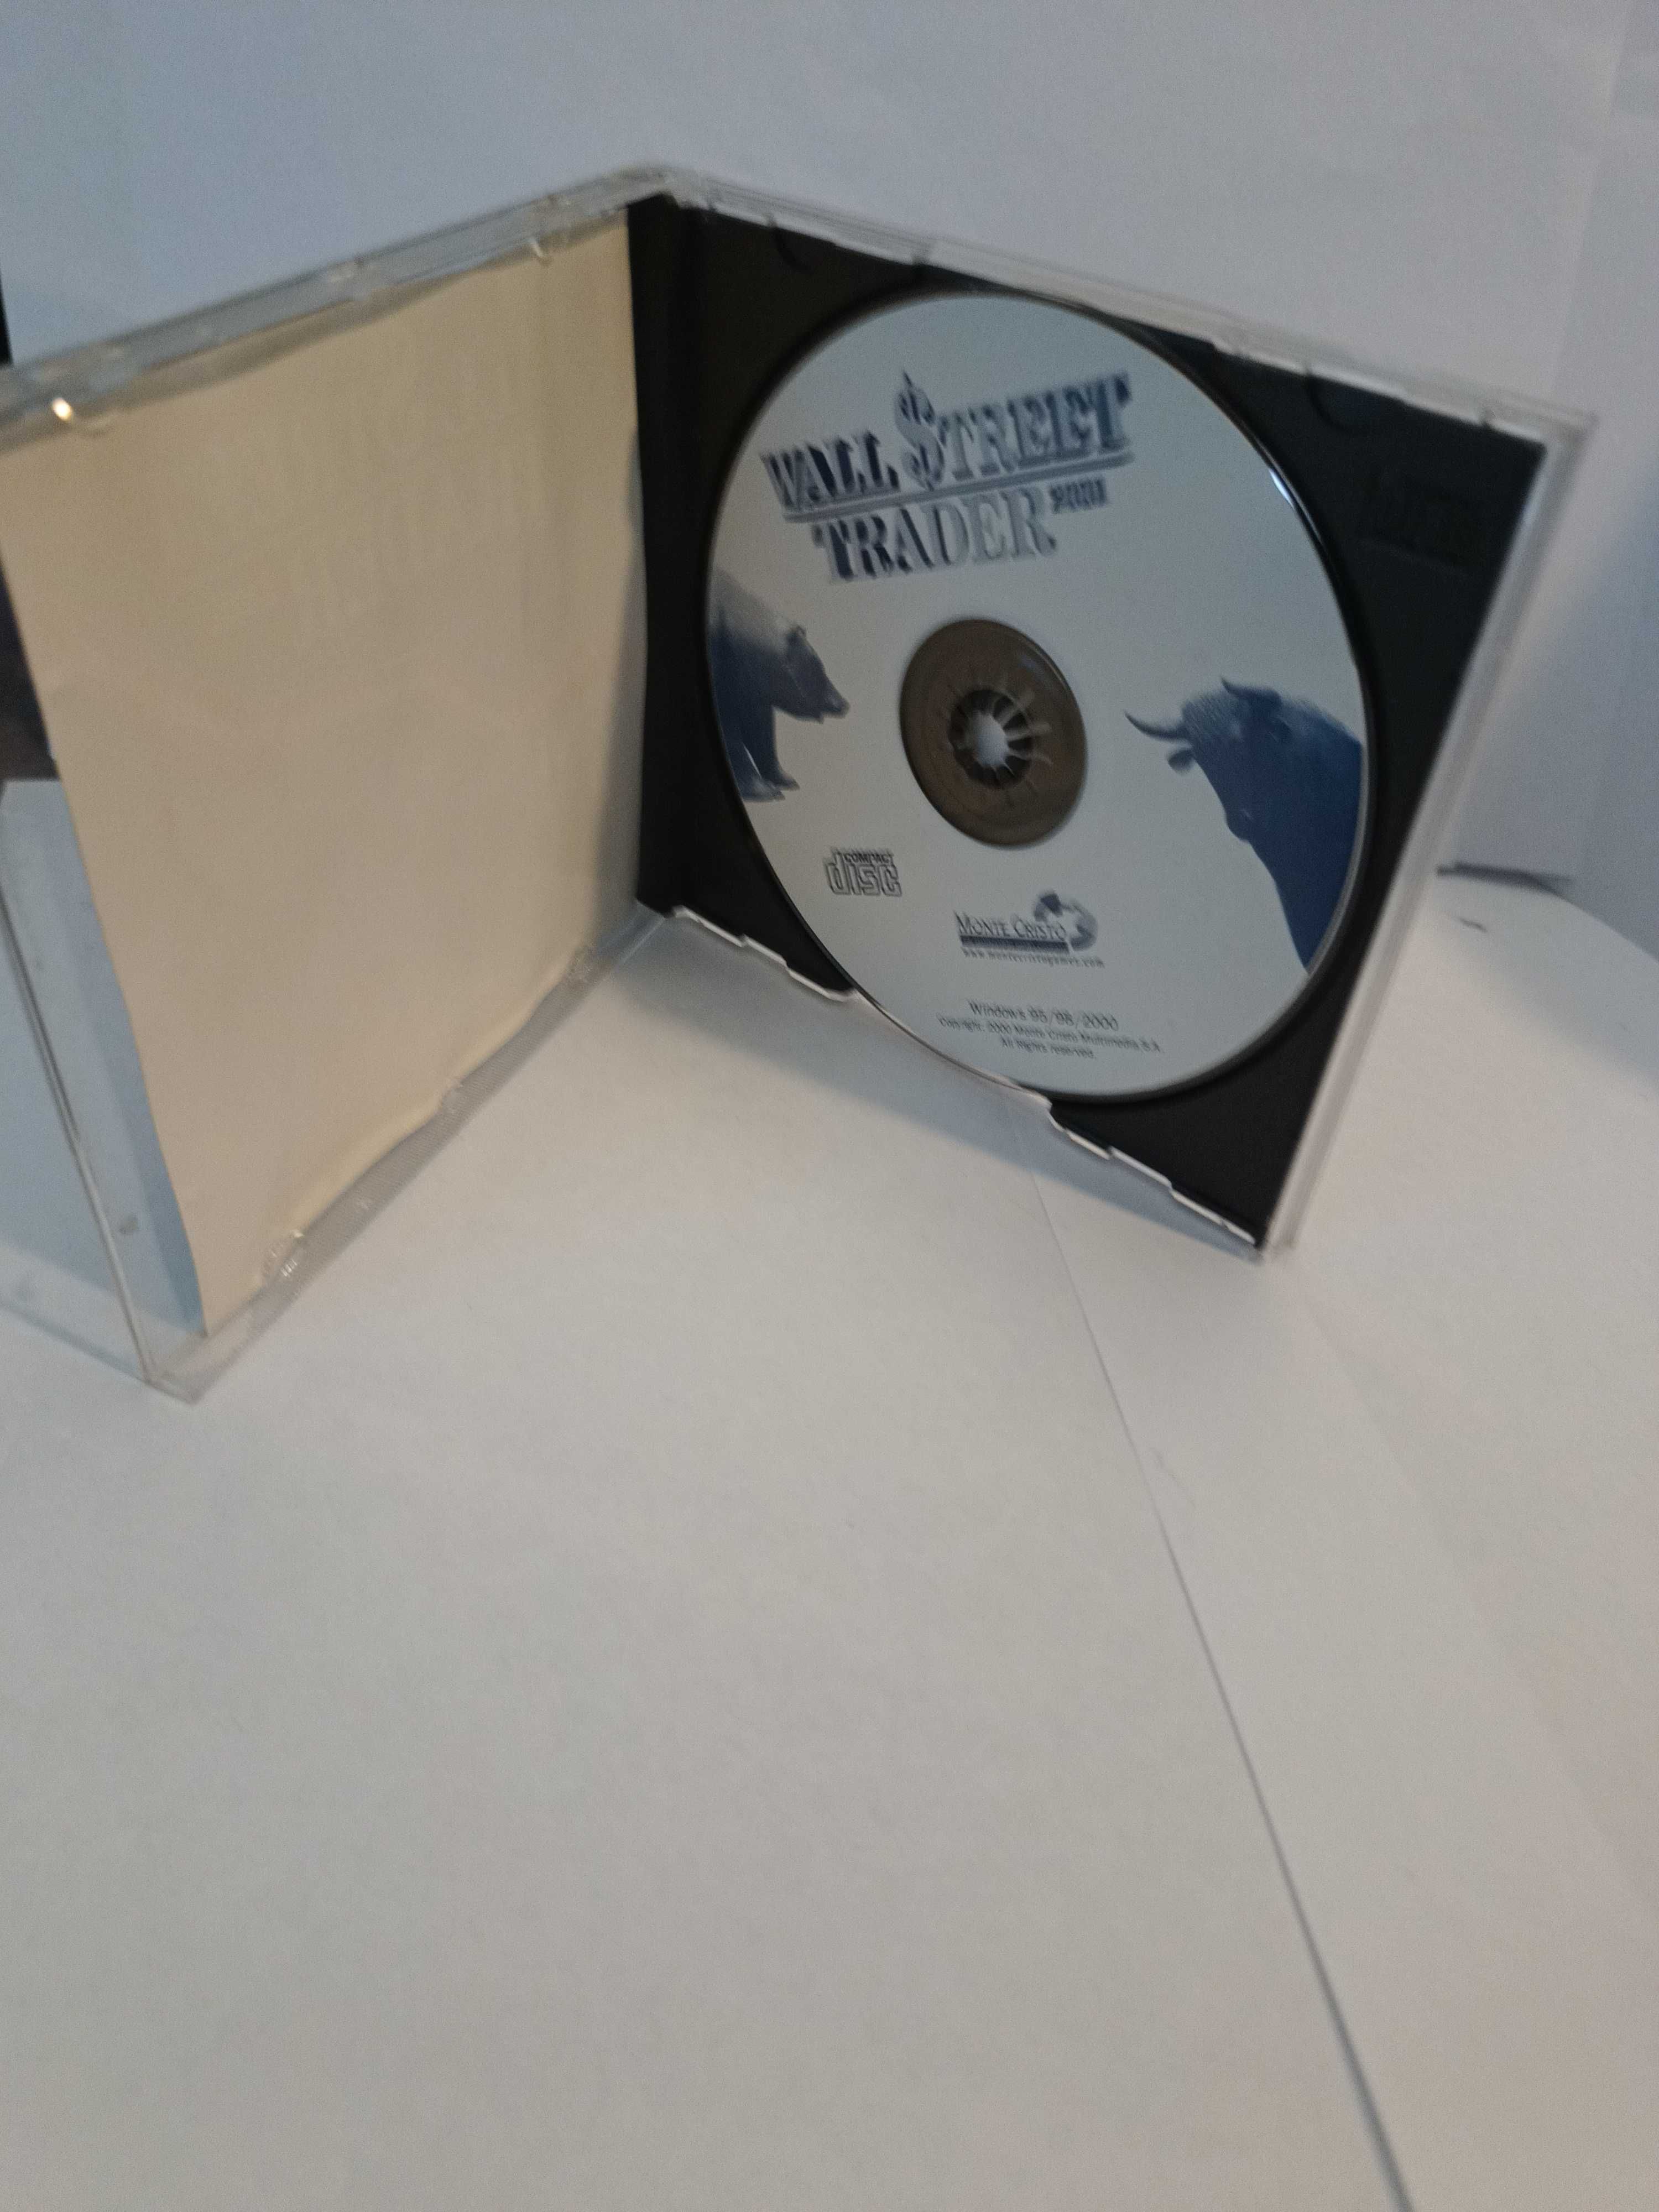 Wall street traser cd